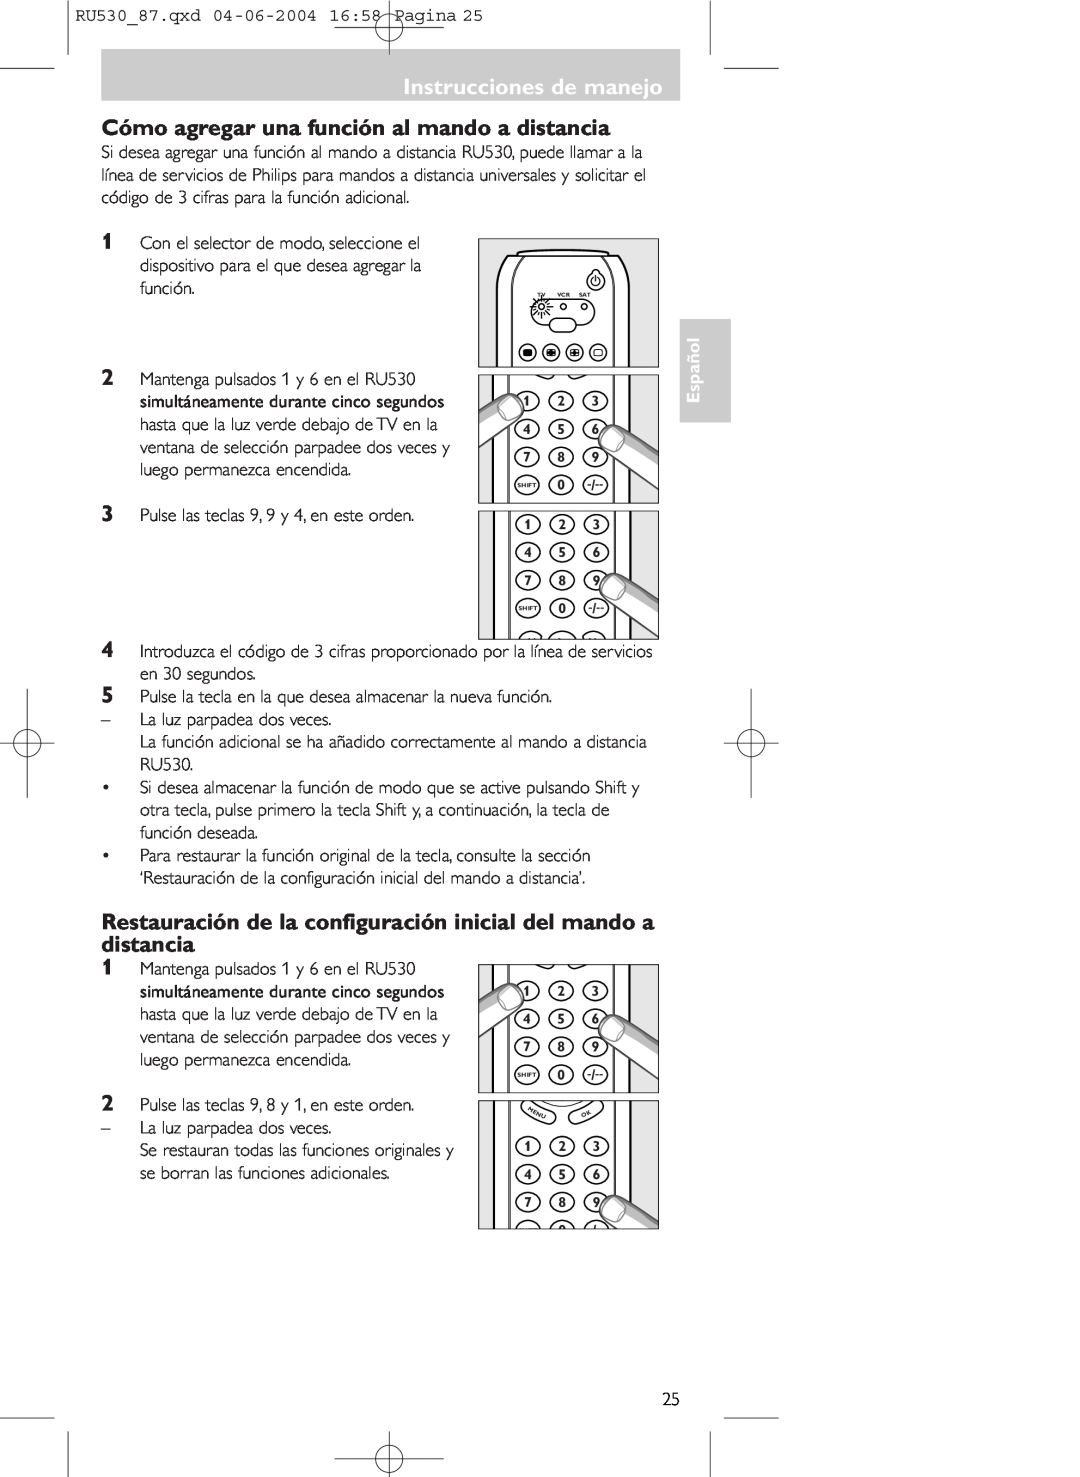 Philips SBC RU 530/87U manual Cómo agregar una función al mando a distancia, Mantenga pulsados 1 y 6 en el RU530, Español 